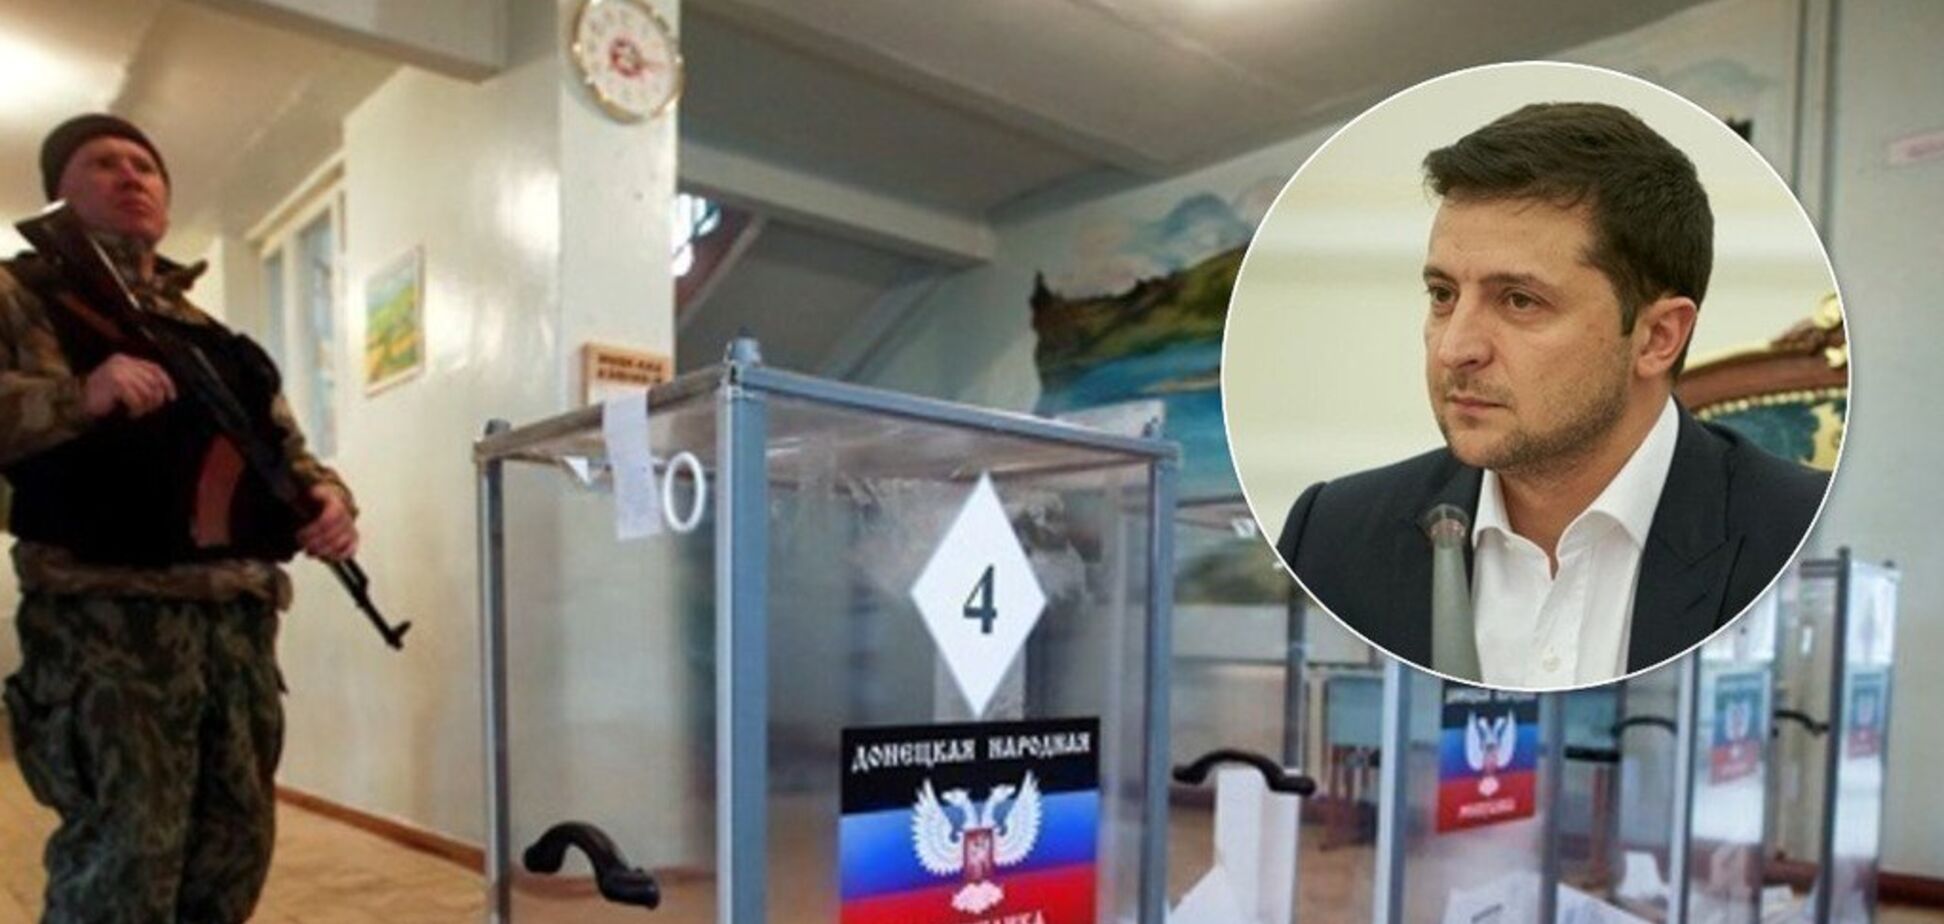 Под присмотром Путина и градом пуль: получится ли у Зеленского провести выборы на Донбассе